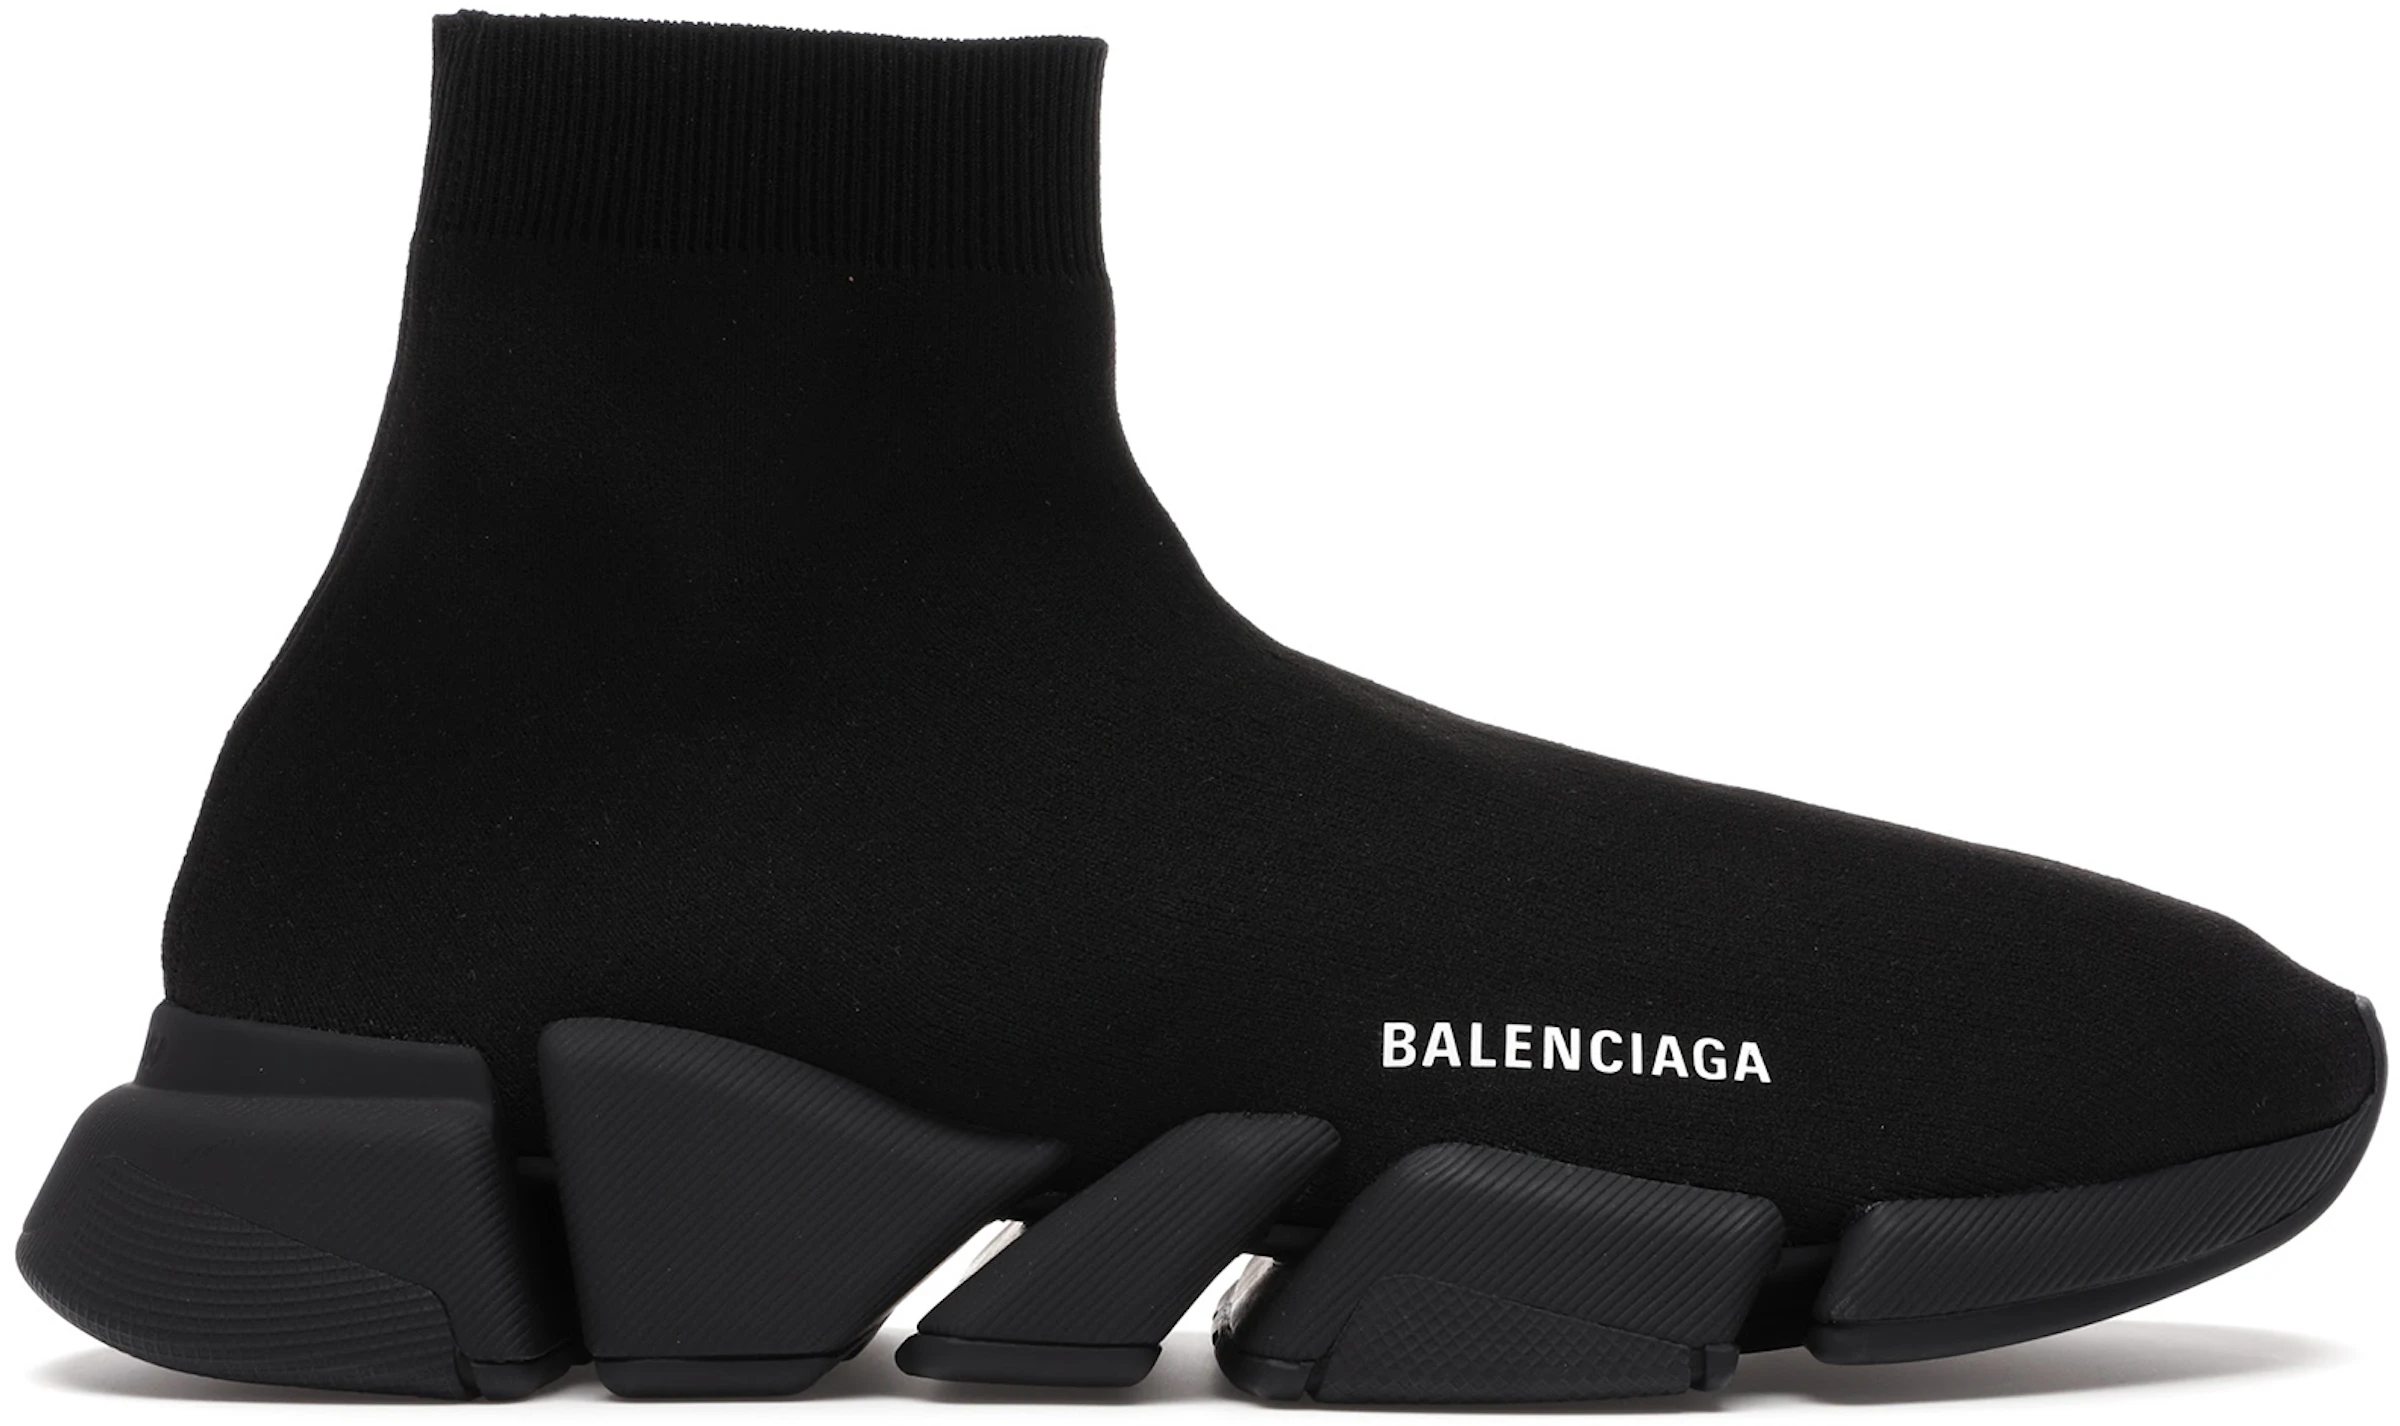 Perfecto traductor persuadir Compra zapatos Balenciaga desde £ 155 - StockX